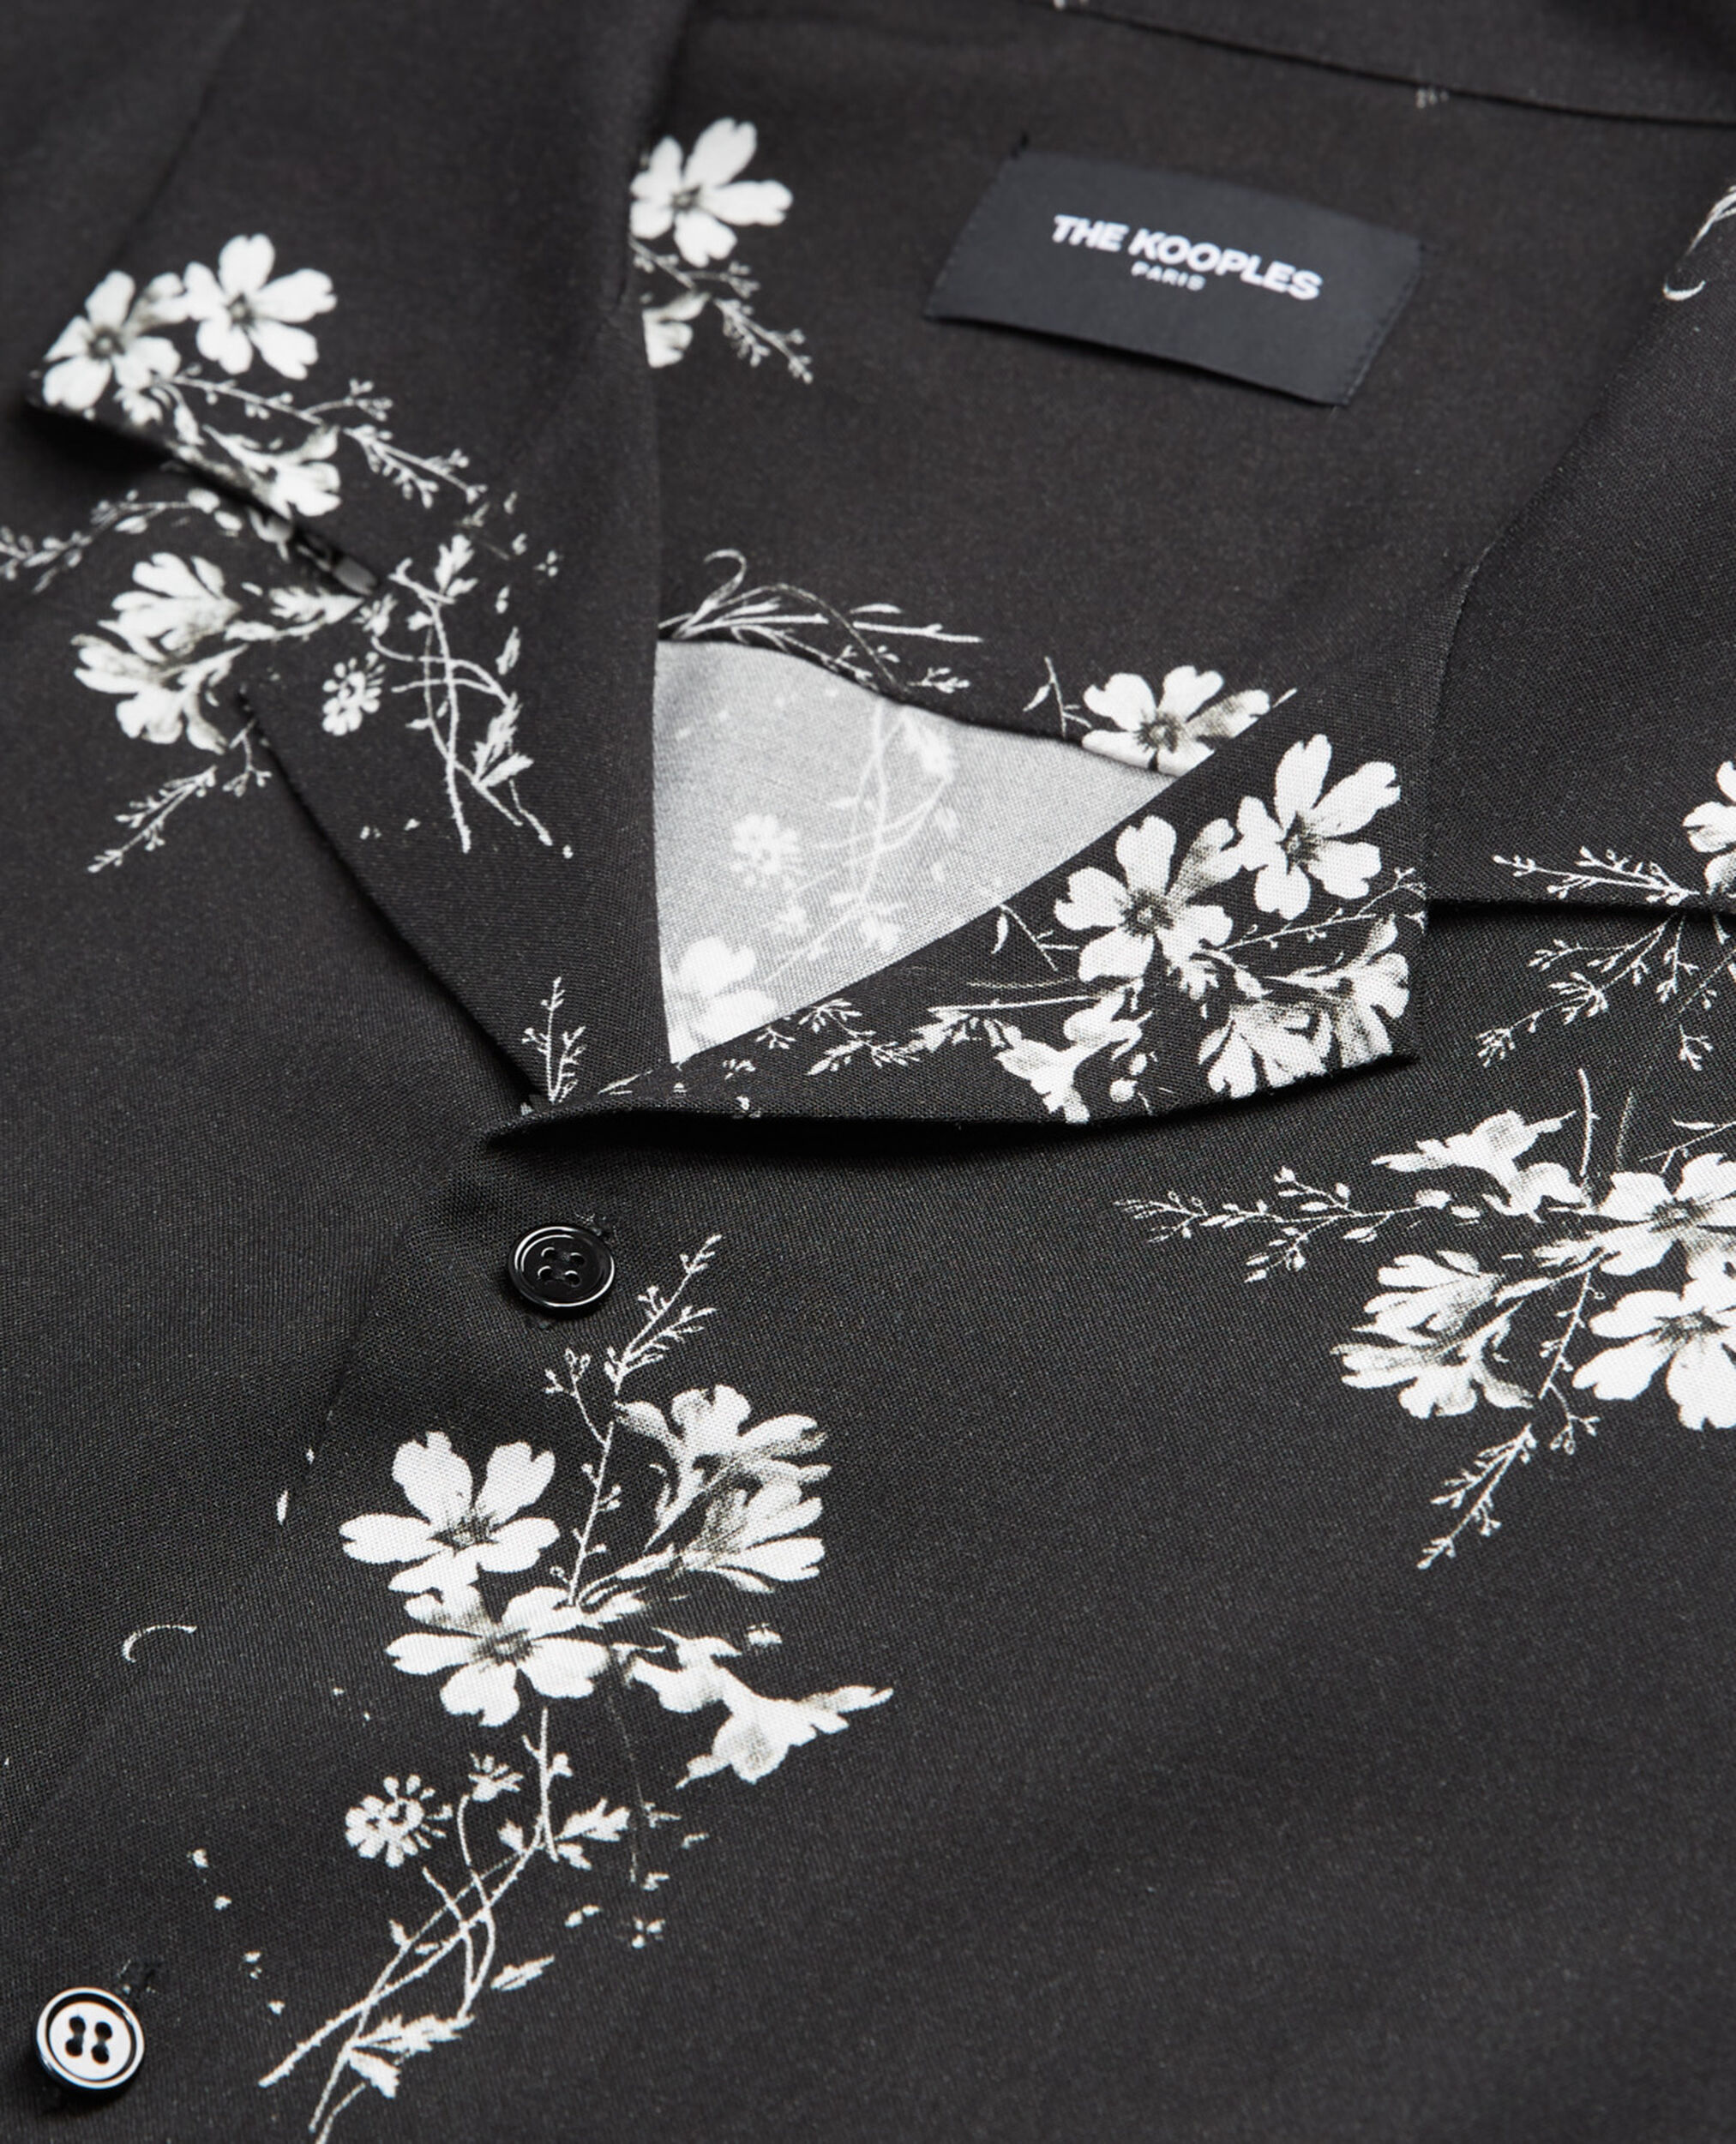 Camisa estampado floral, BLACK WHITE, hi-res image number null